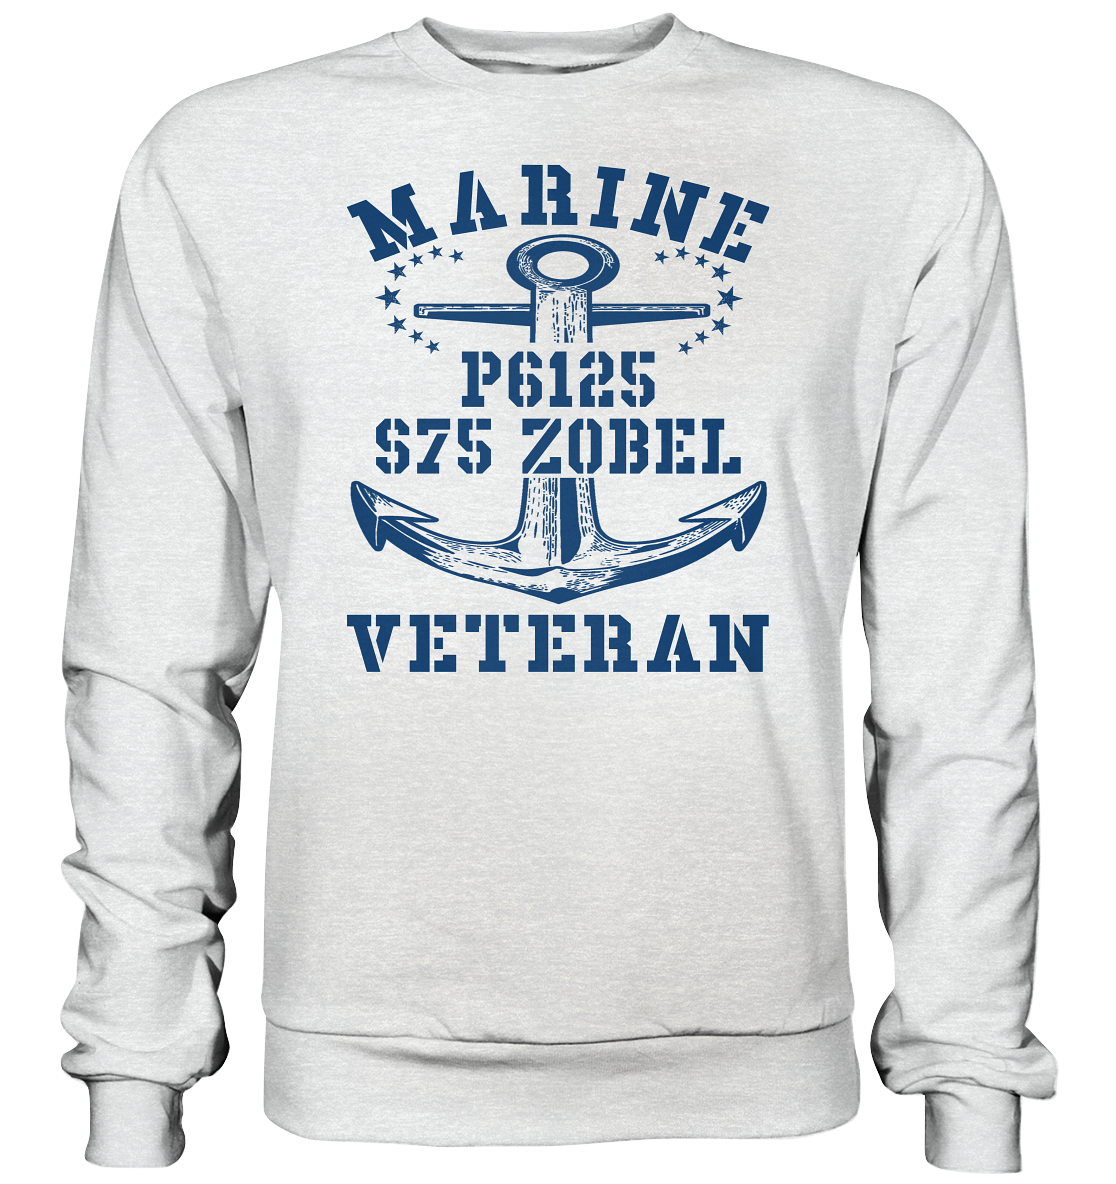 FK-Schnellboot P6125 ZOBEL Marine Veteran - Premium Sweatshirt